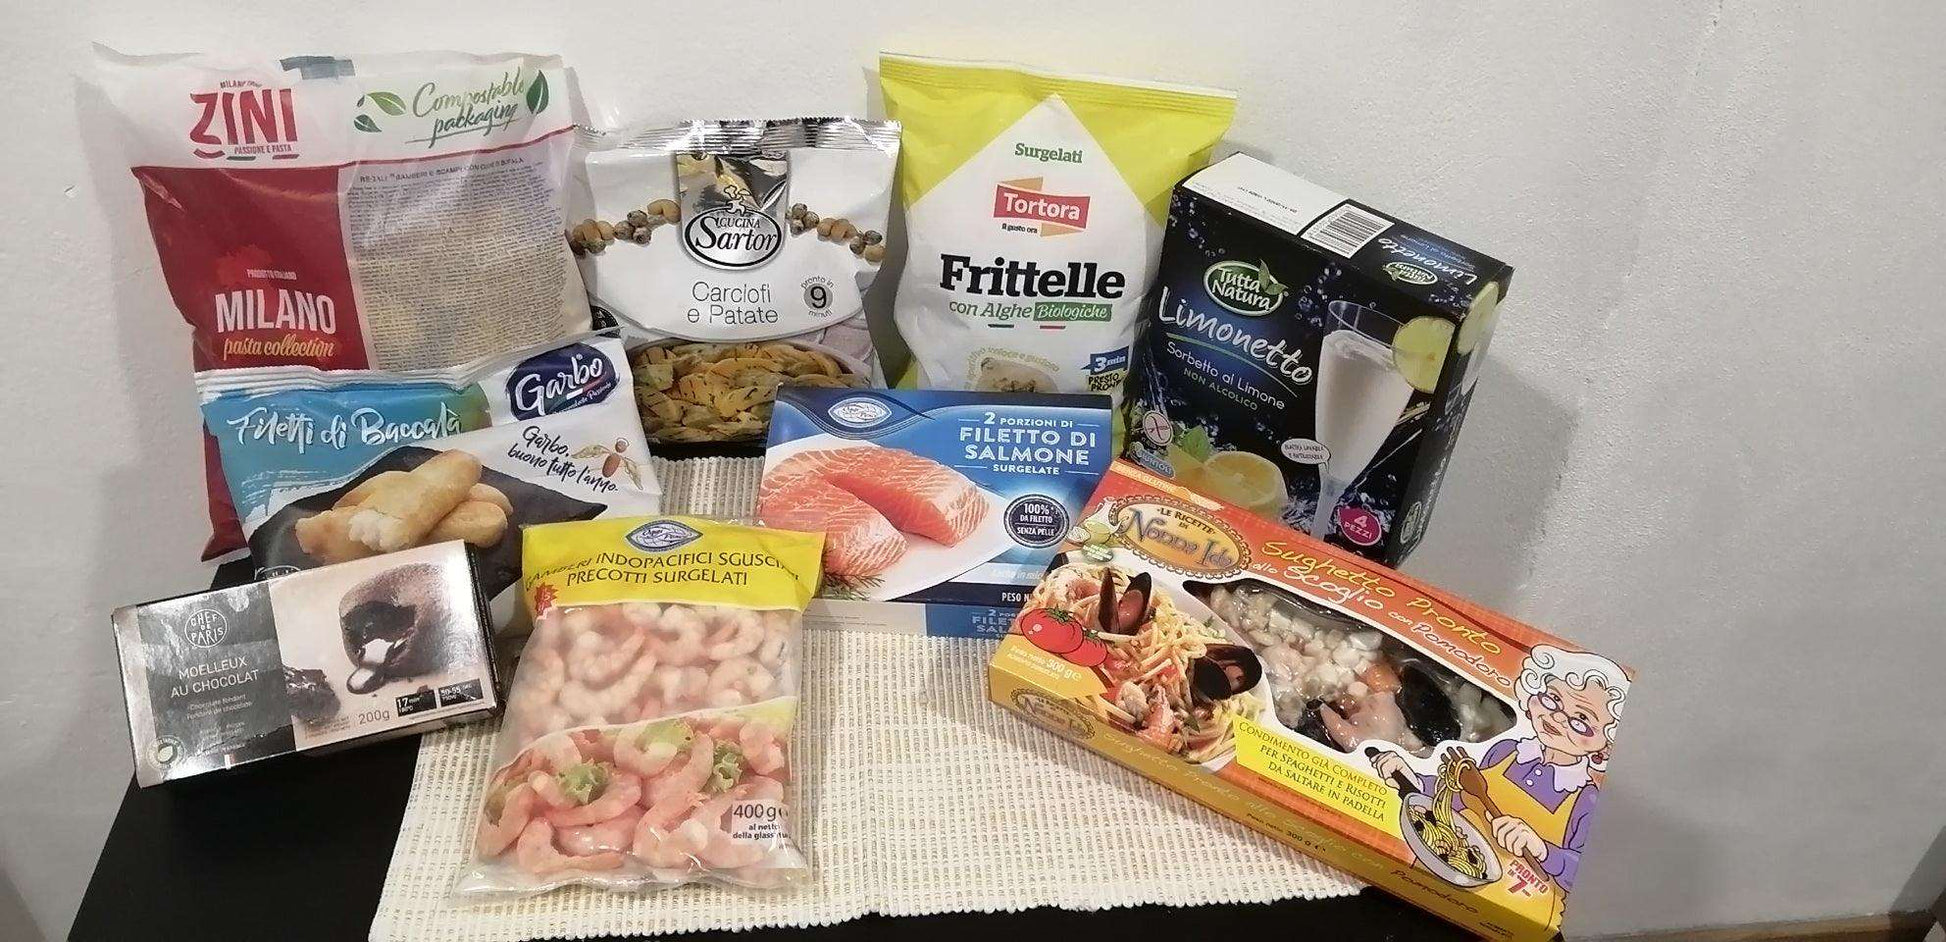 BOX ROMANTICO – PESCE - I migliori prodotti Made in Italy da Fiera di Monza Shop - Solo 63.29€! Acquista subito su Fiera di Monza Shop!